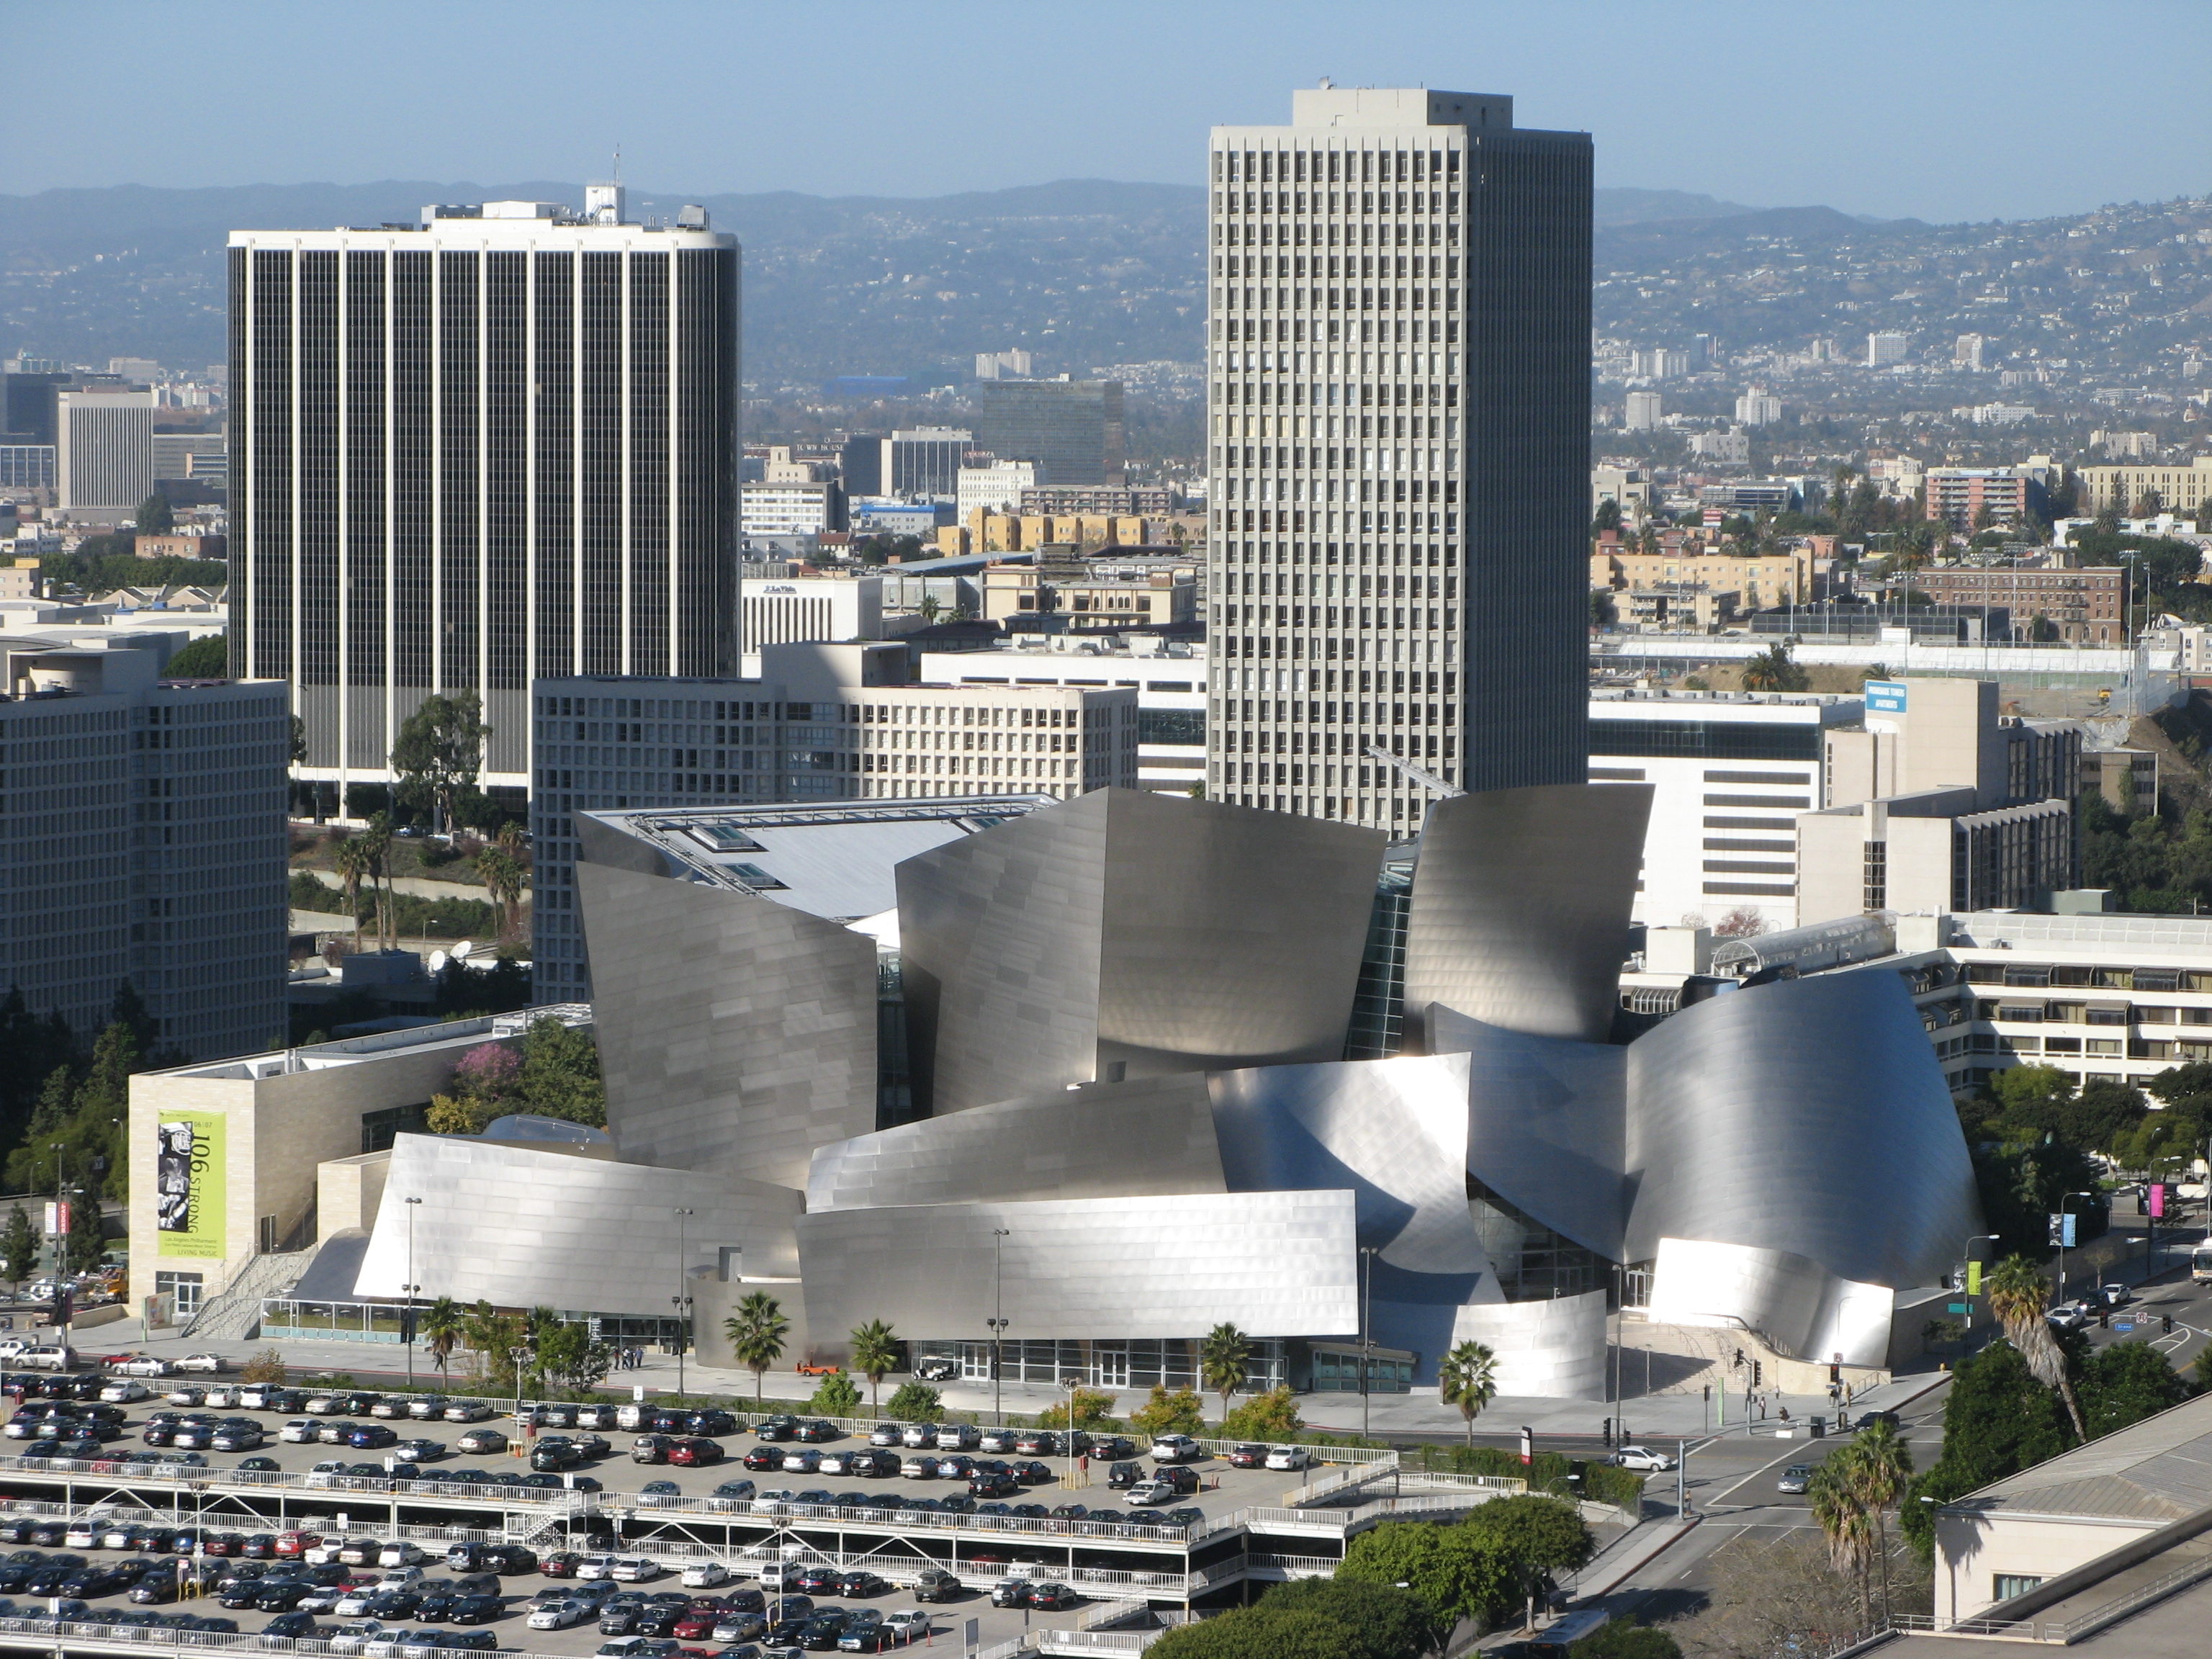 Зал диснея. Лос Анджелес концертный зал Уолта Диснея. Фрэнк Гери Лос Анджелес. Фрэнк Гери концертный зал Диснея в Лос Анджелесе. Концертный зал Уолта Диснея в Лос-Анджелесе архитектура.